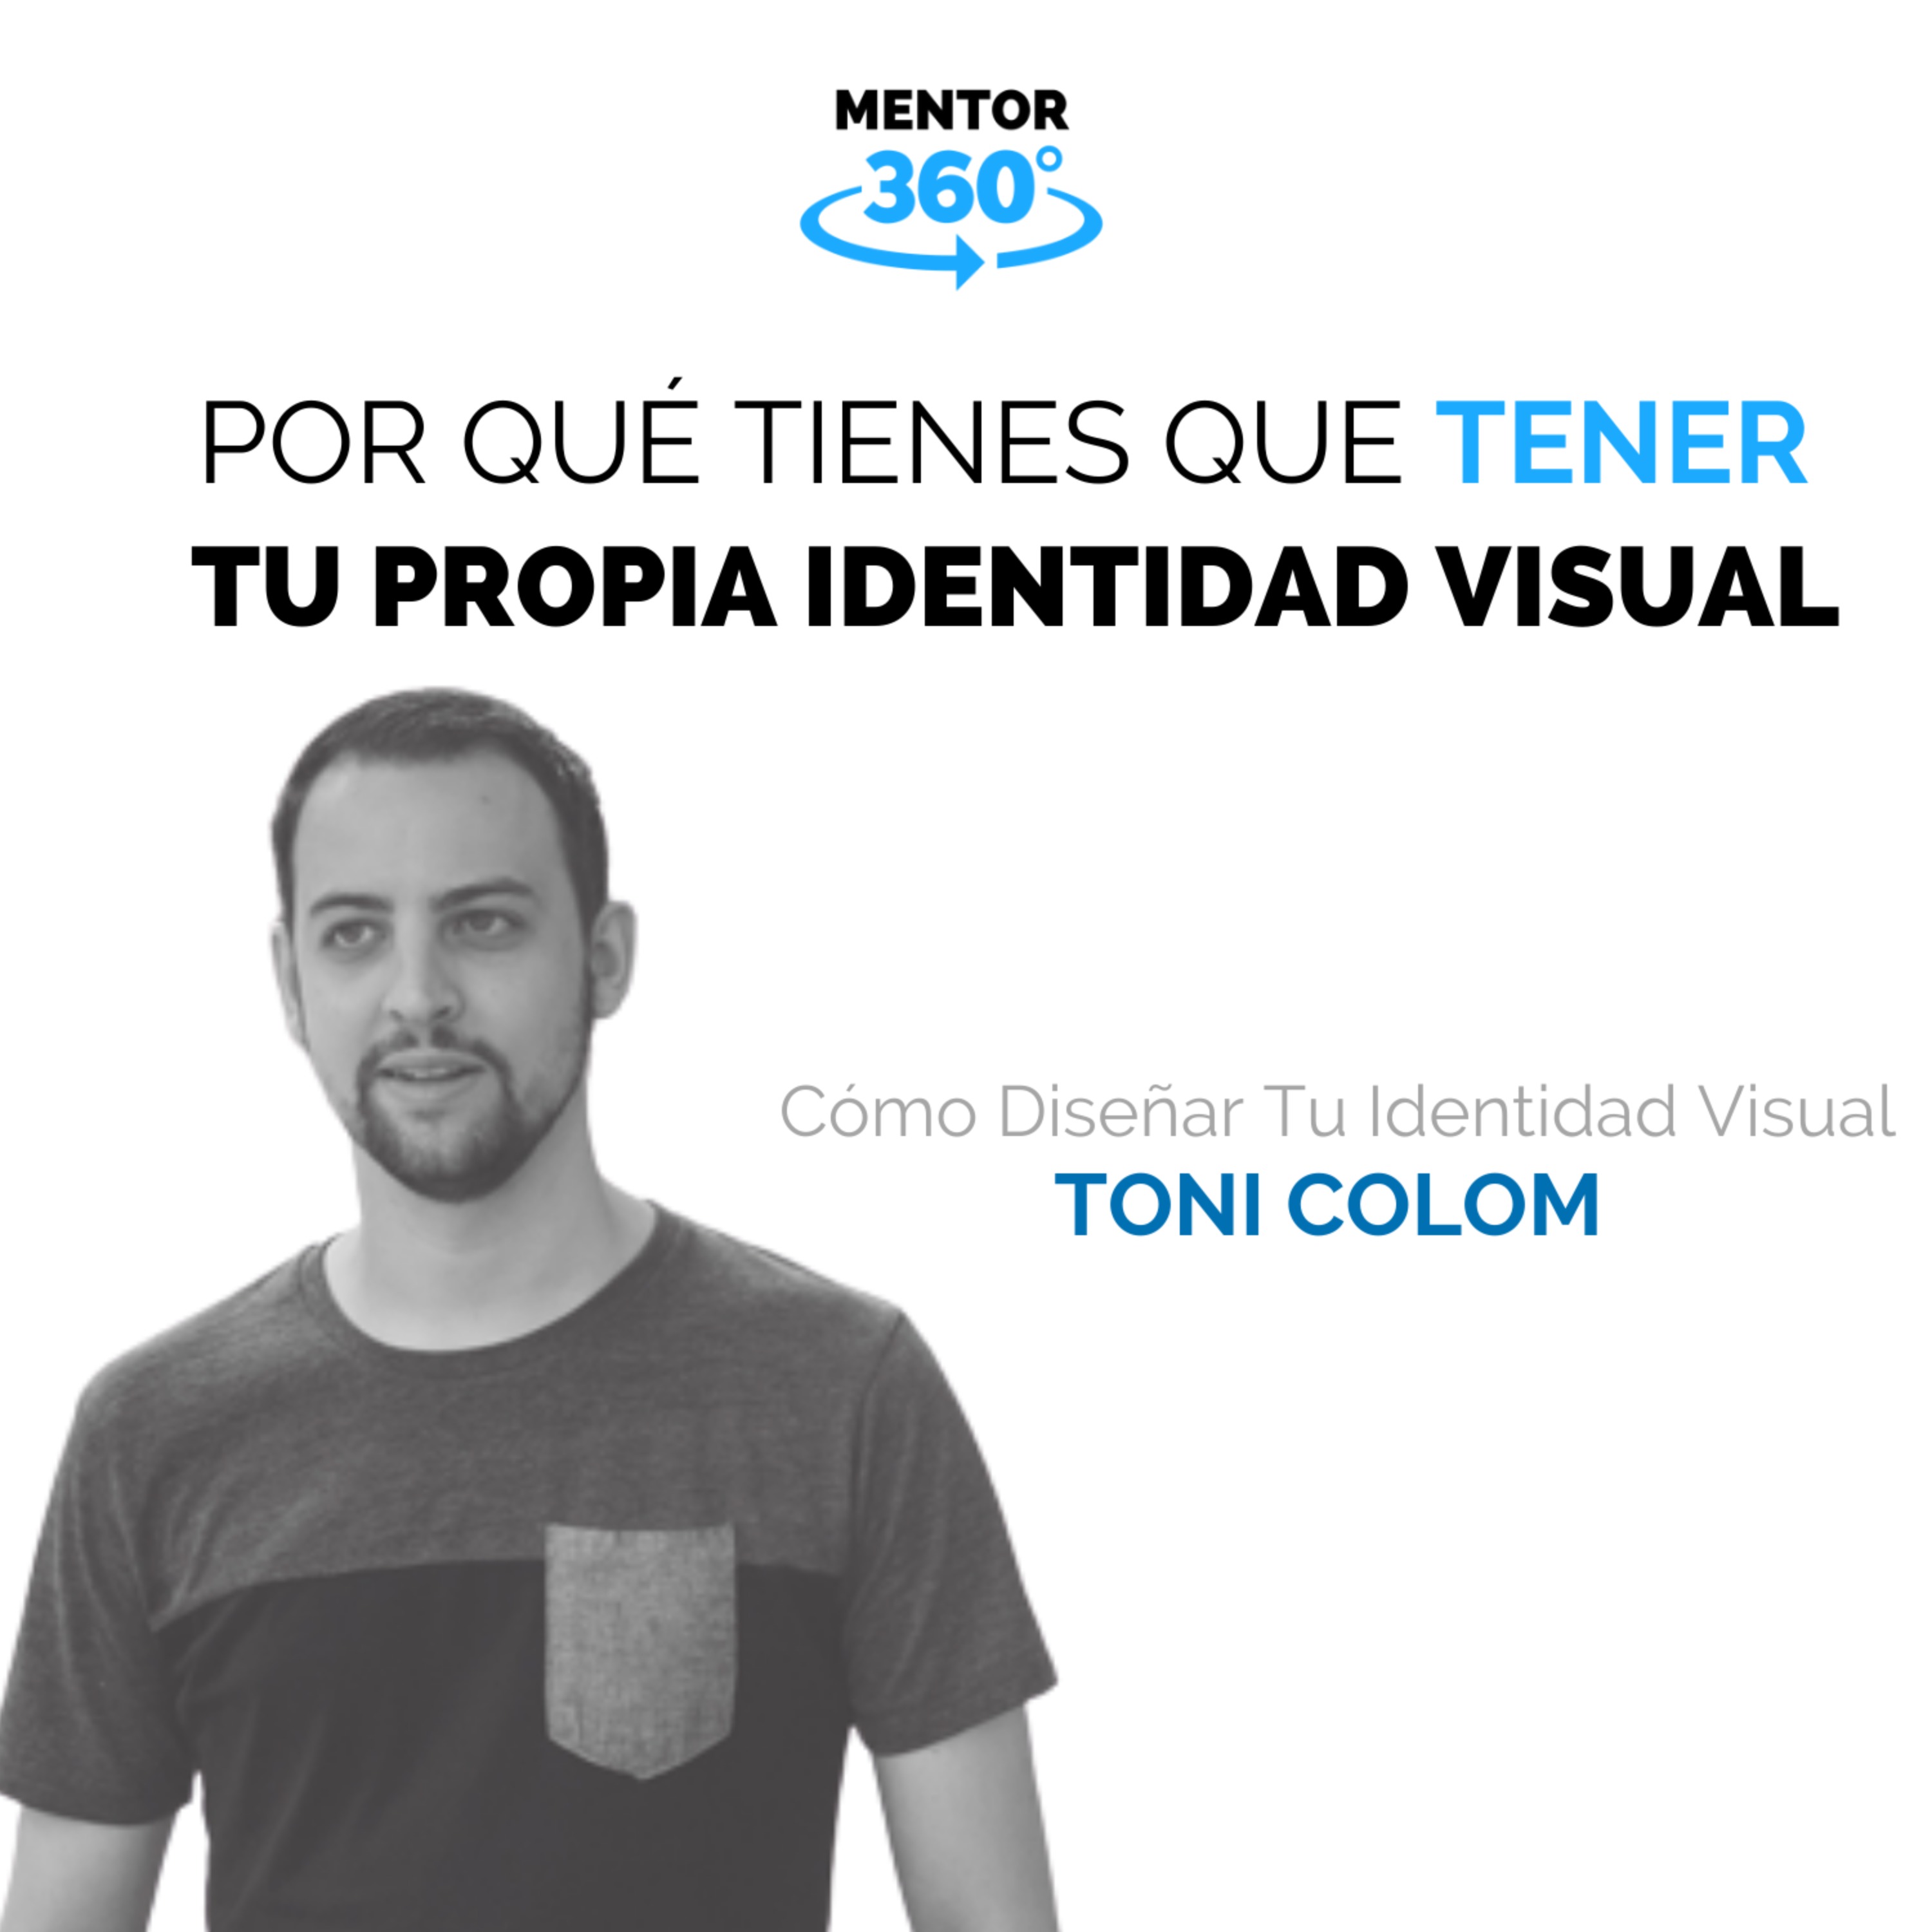 Por Qué Tienes Que Tener Tu Propia Identidad Visual - Cómo Diseñar Tu Identidad Visual - Toni Colom - MENTOR360